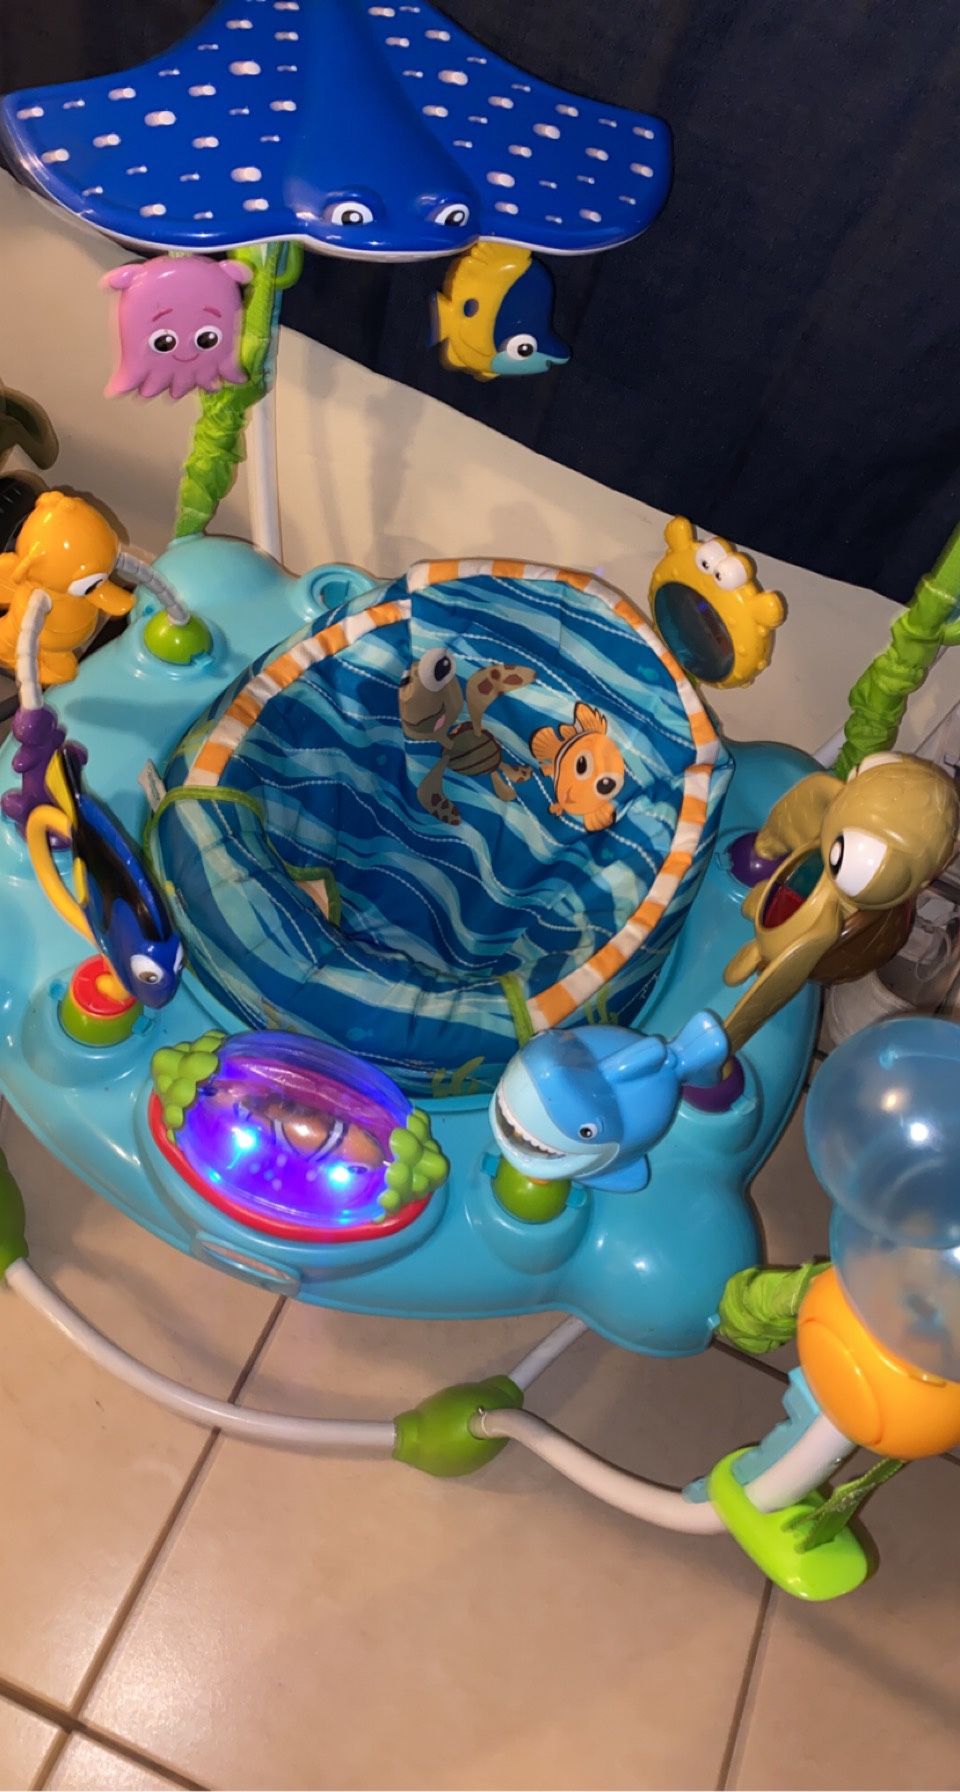 Disney baby finding Nemo Sea of activities jumper